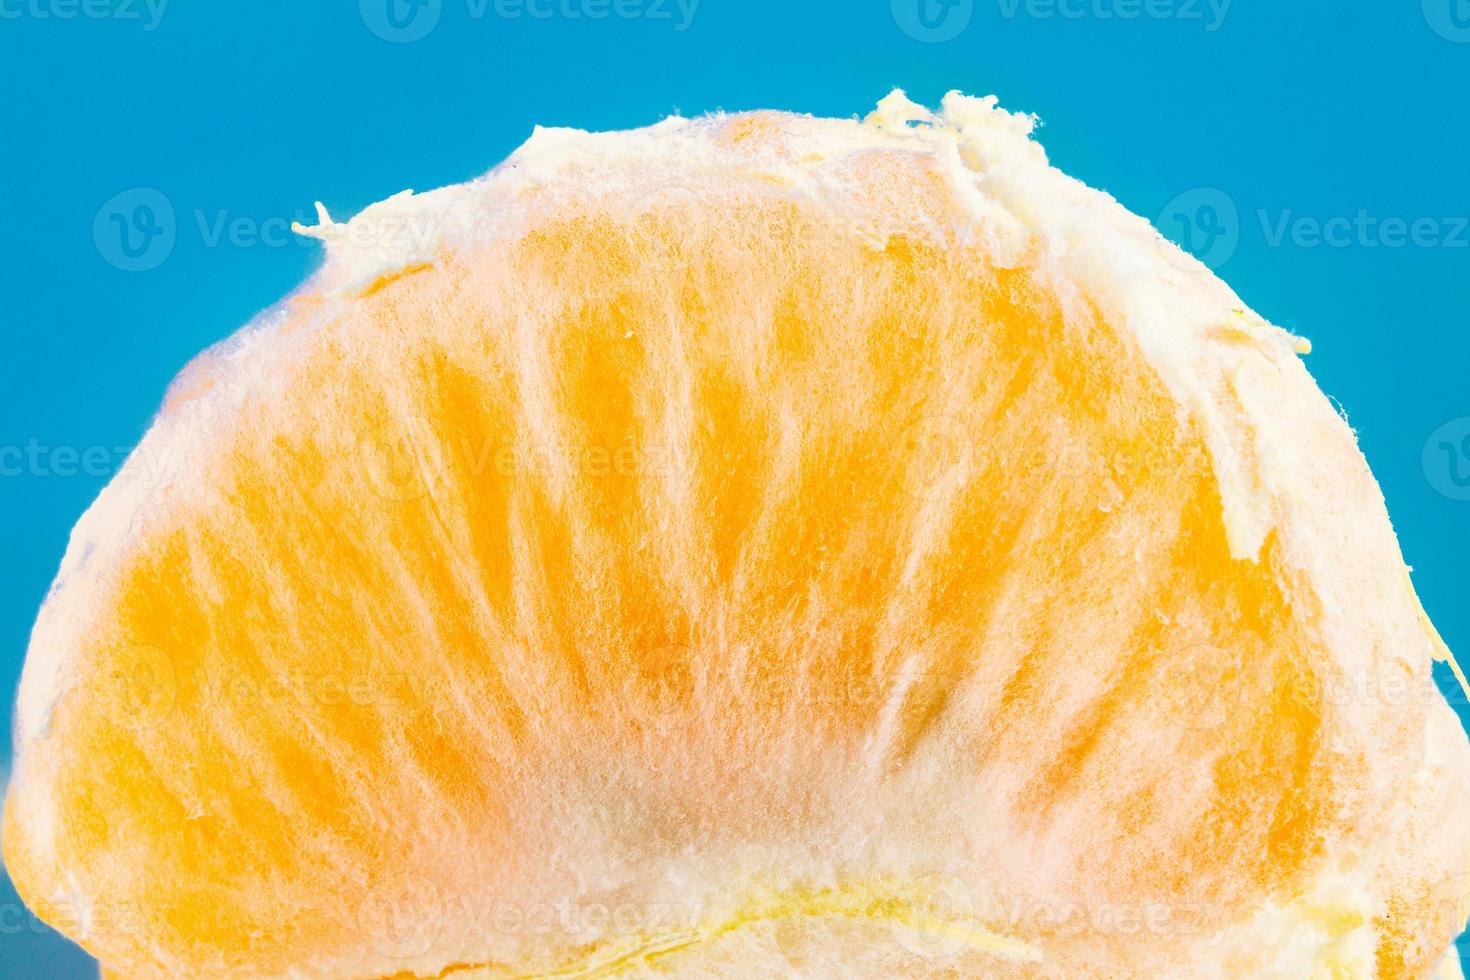 Scheibe der einzelnen frischen Mandarine auf blauem Hintergrund foto